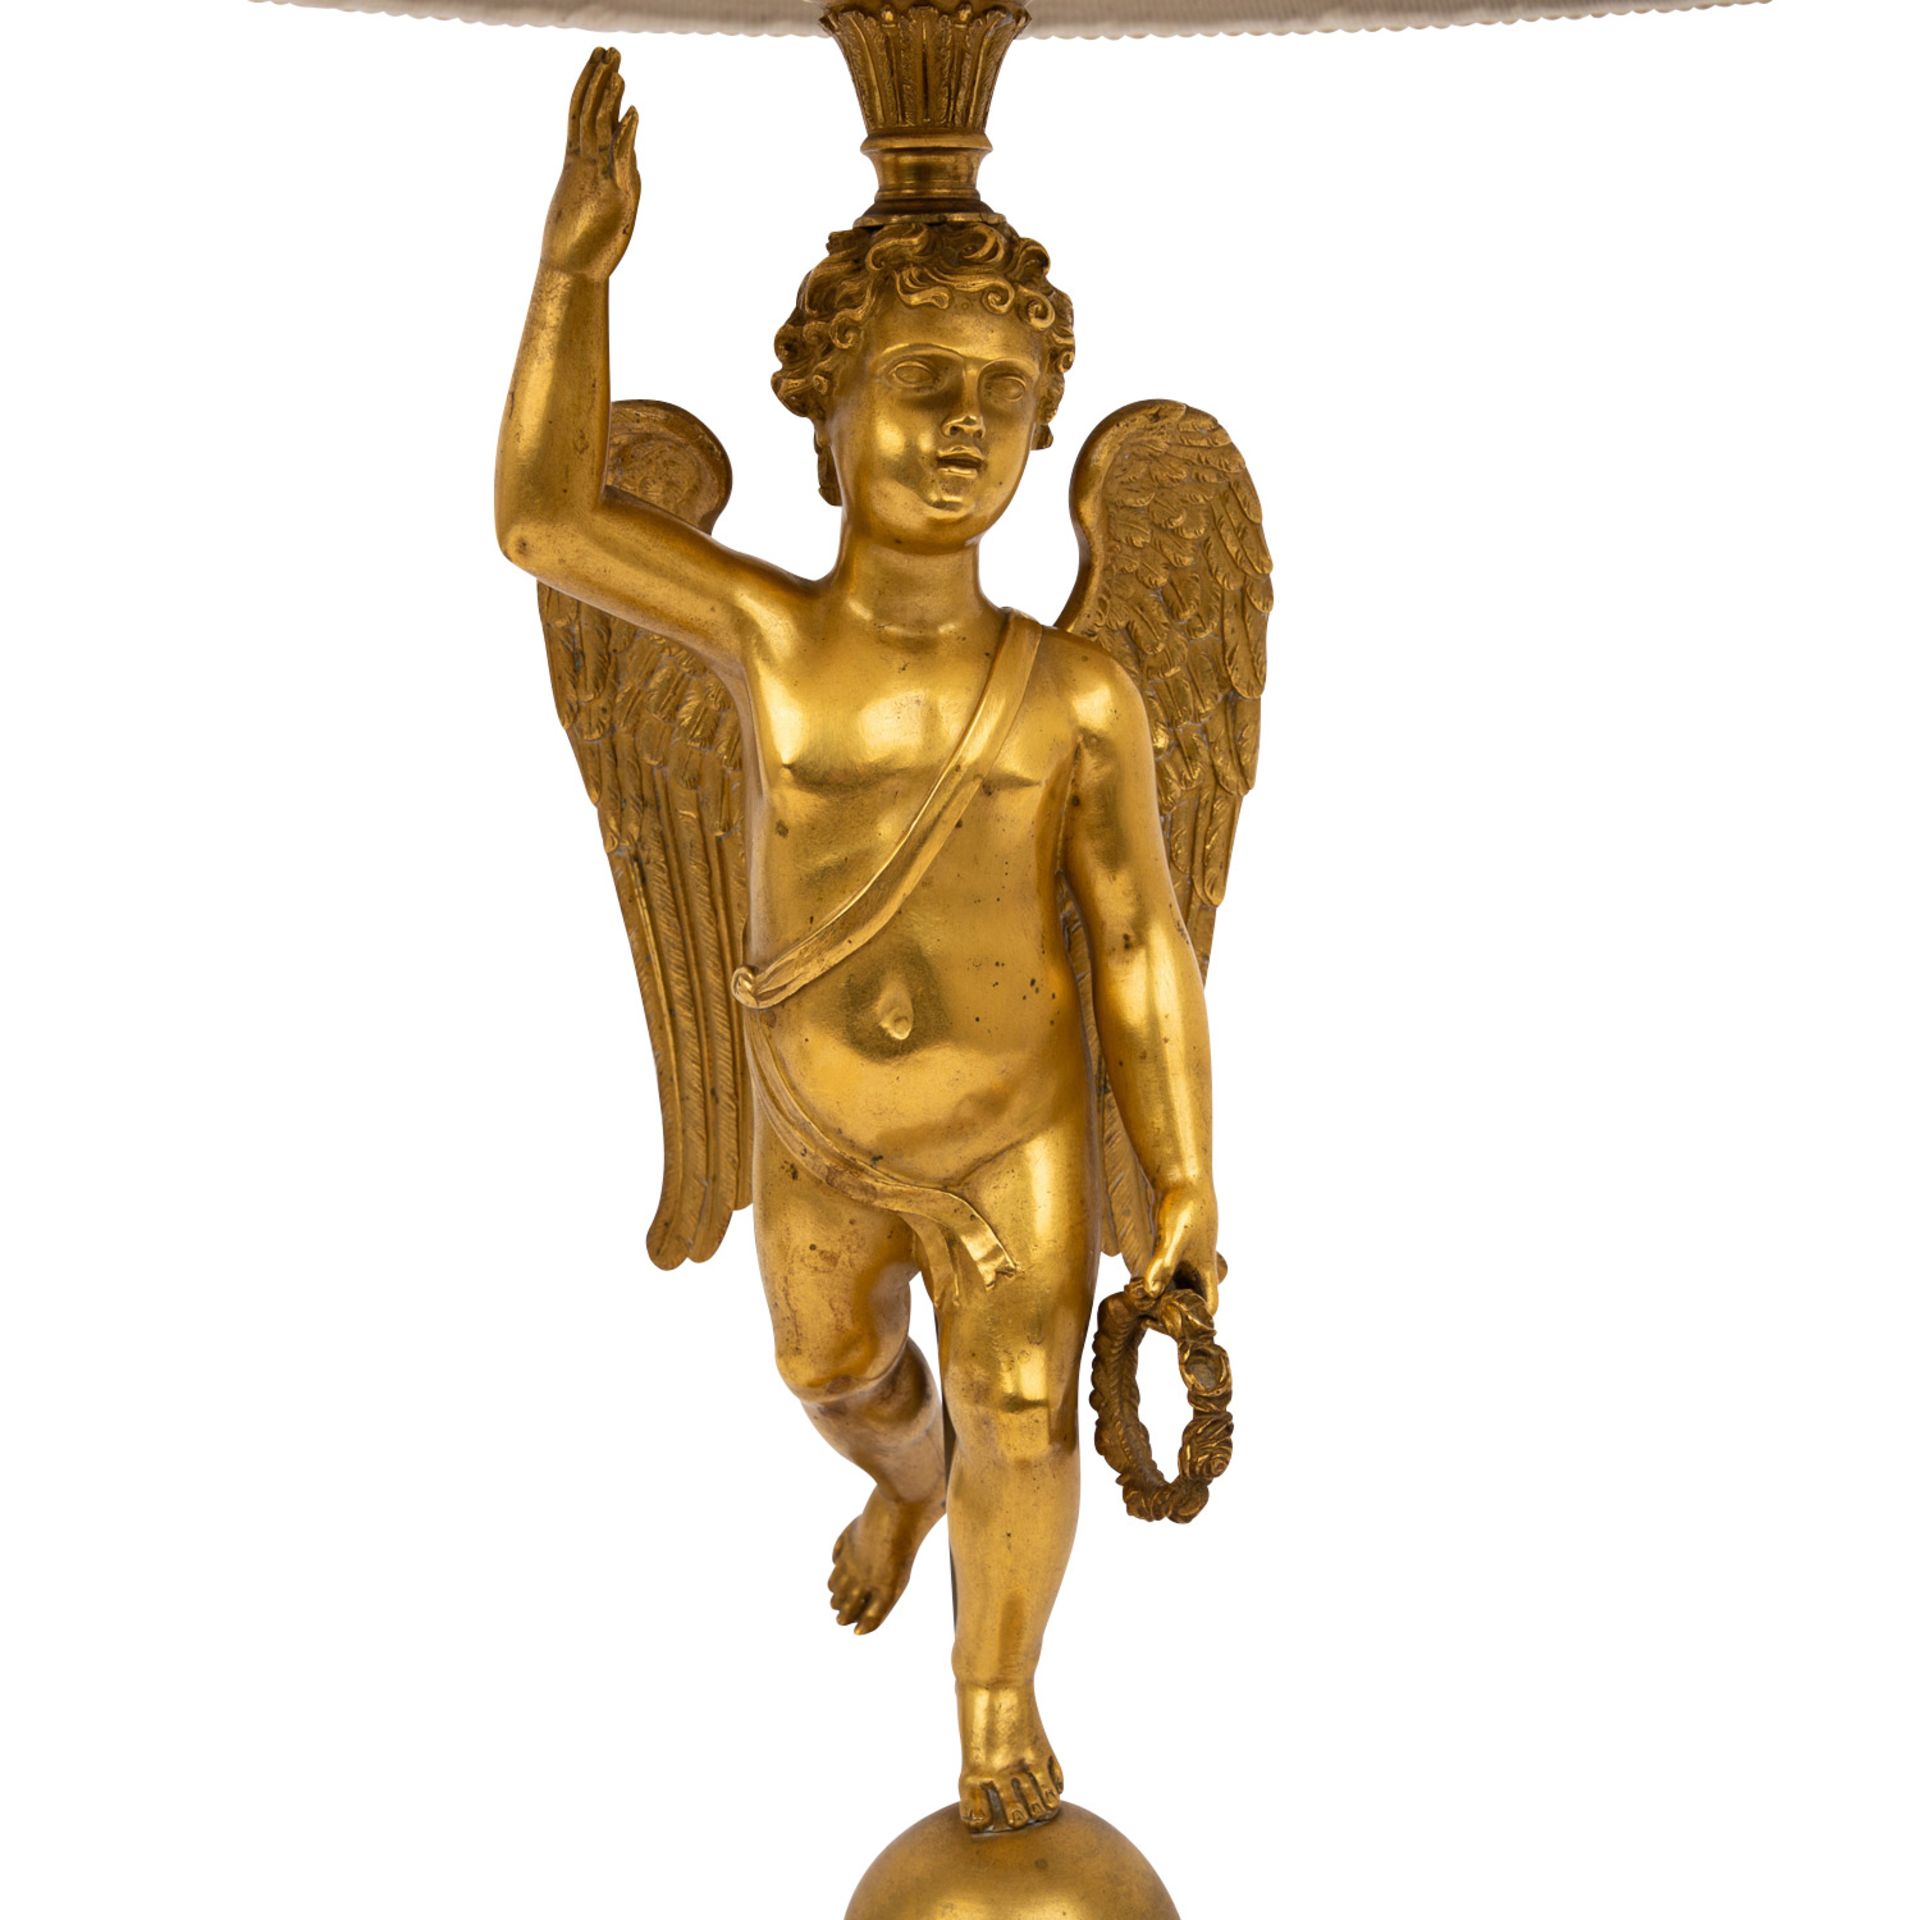 EMPIRE LEUCHTER ALS TISCHLAMPE Frankreich, 19.Jh., Bronze, vergoldet, äußerst fein gearbeitet und - Bild 2 aus 6